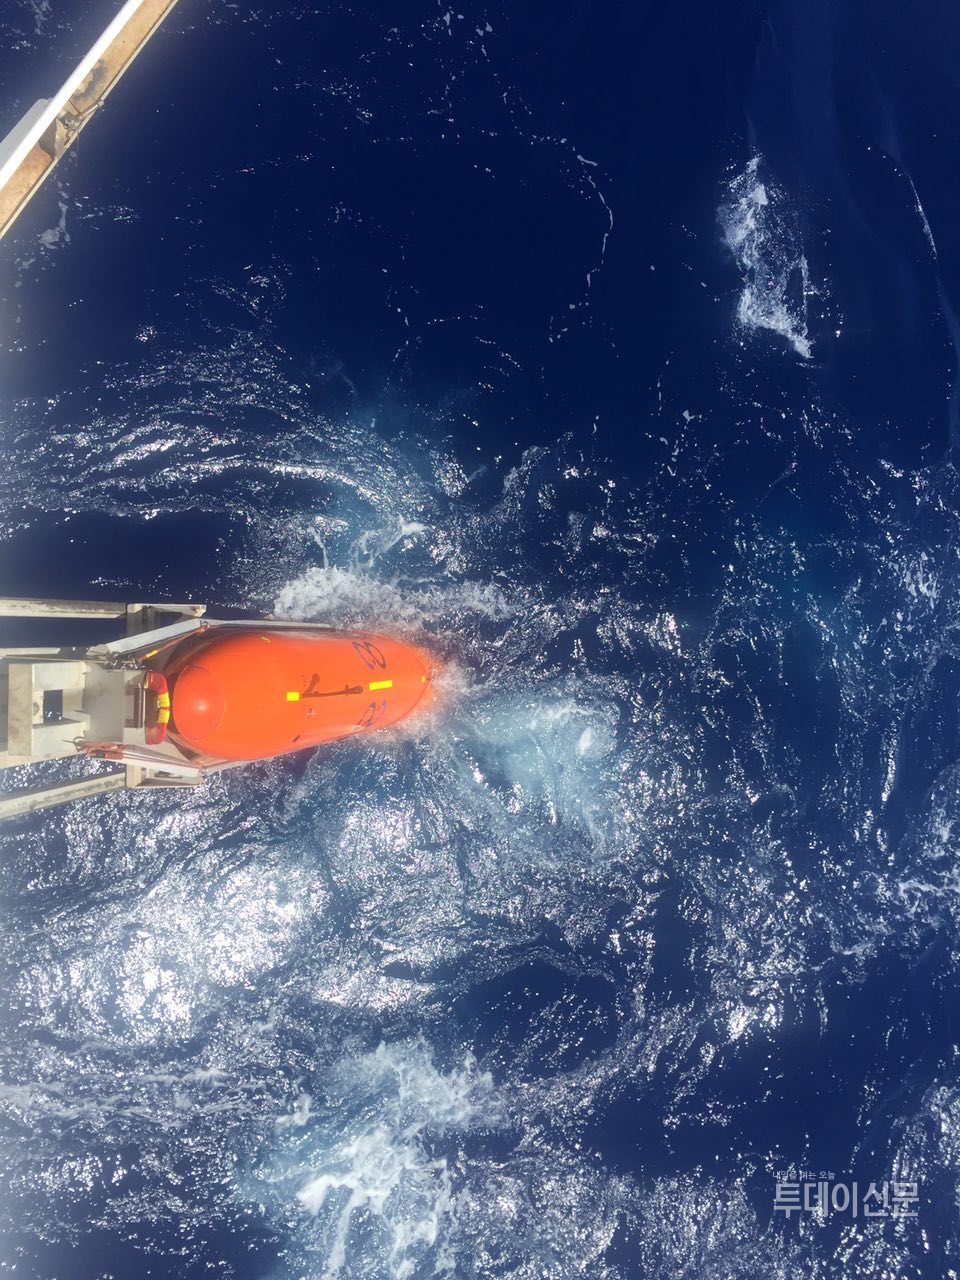 오션인피니티(Ocean Infinity)사의 심해수색 선박 시베드 콘스트럭터(Seabed Constructor)호가 남대서양 해역의 스텔라데이지호 침몰 사고해역에서 선체 수색을 위한 첫번째 자율무인잠수정(AUV)을 투입하고 있다. 사진제공 = 스텔라데이지호 가족대책위